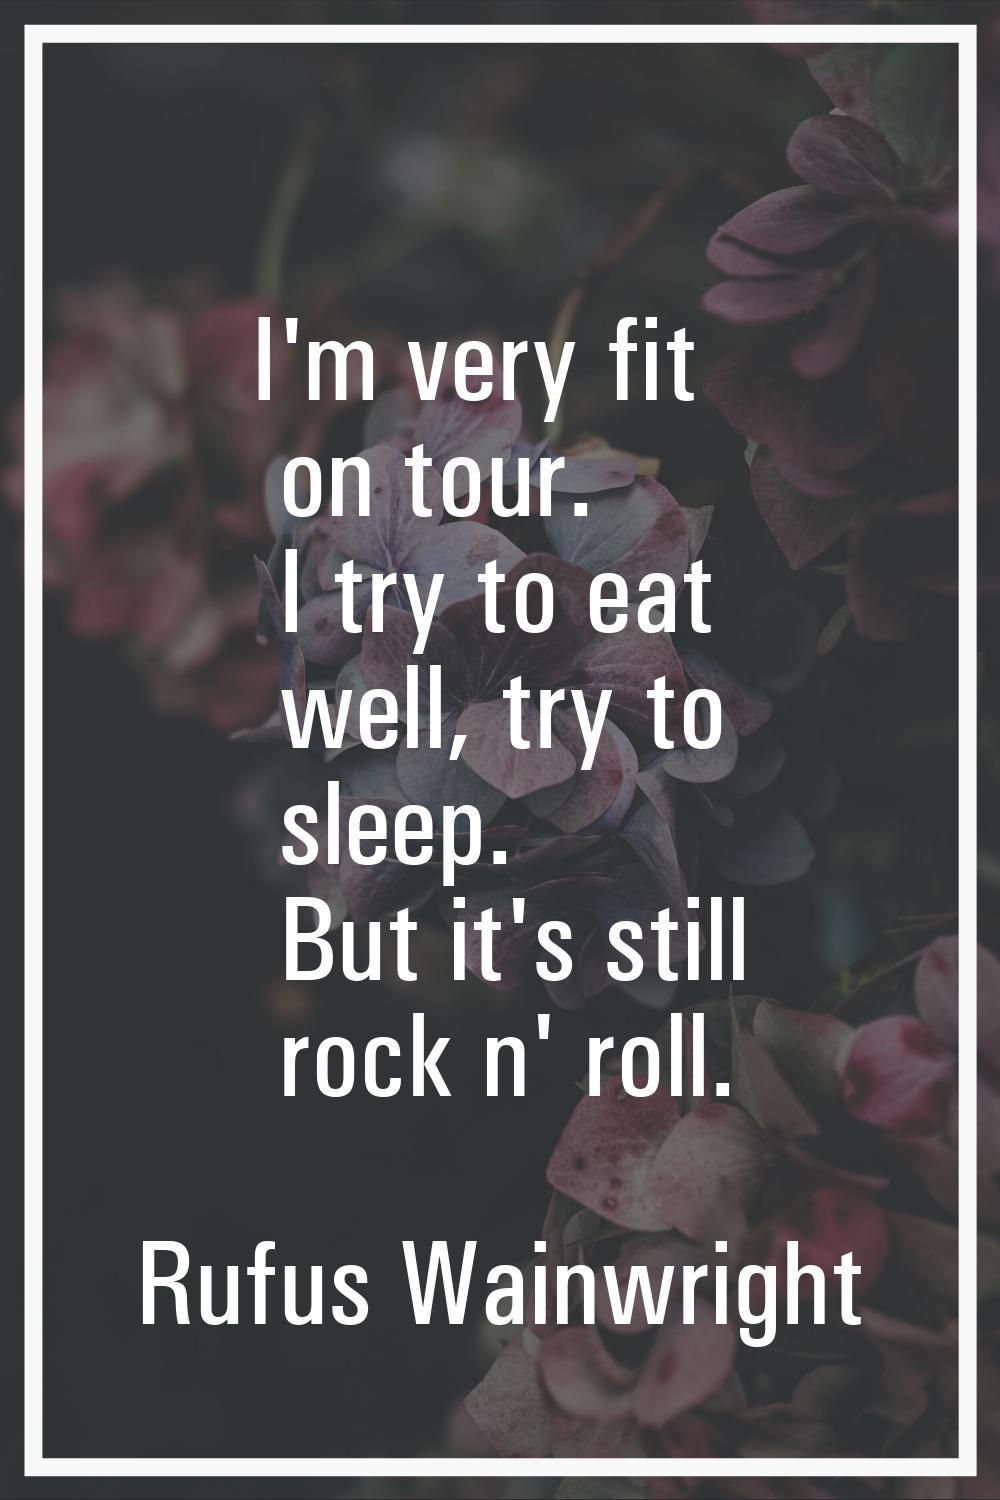 I'm very fit on tour. I try to eat well, try to sleep. But it's still rock n' roll.